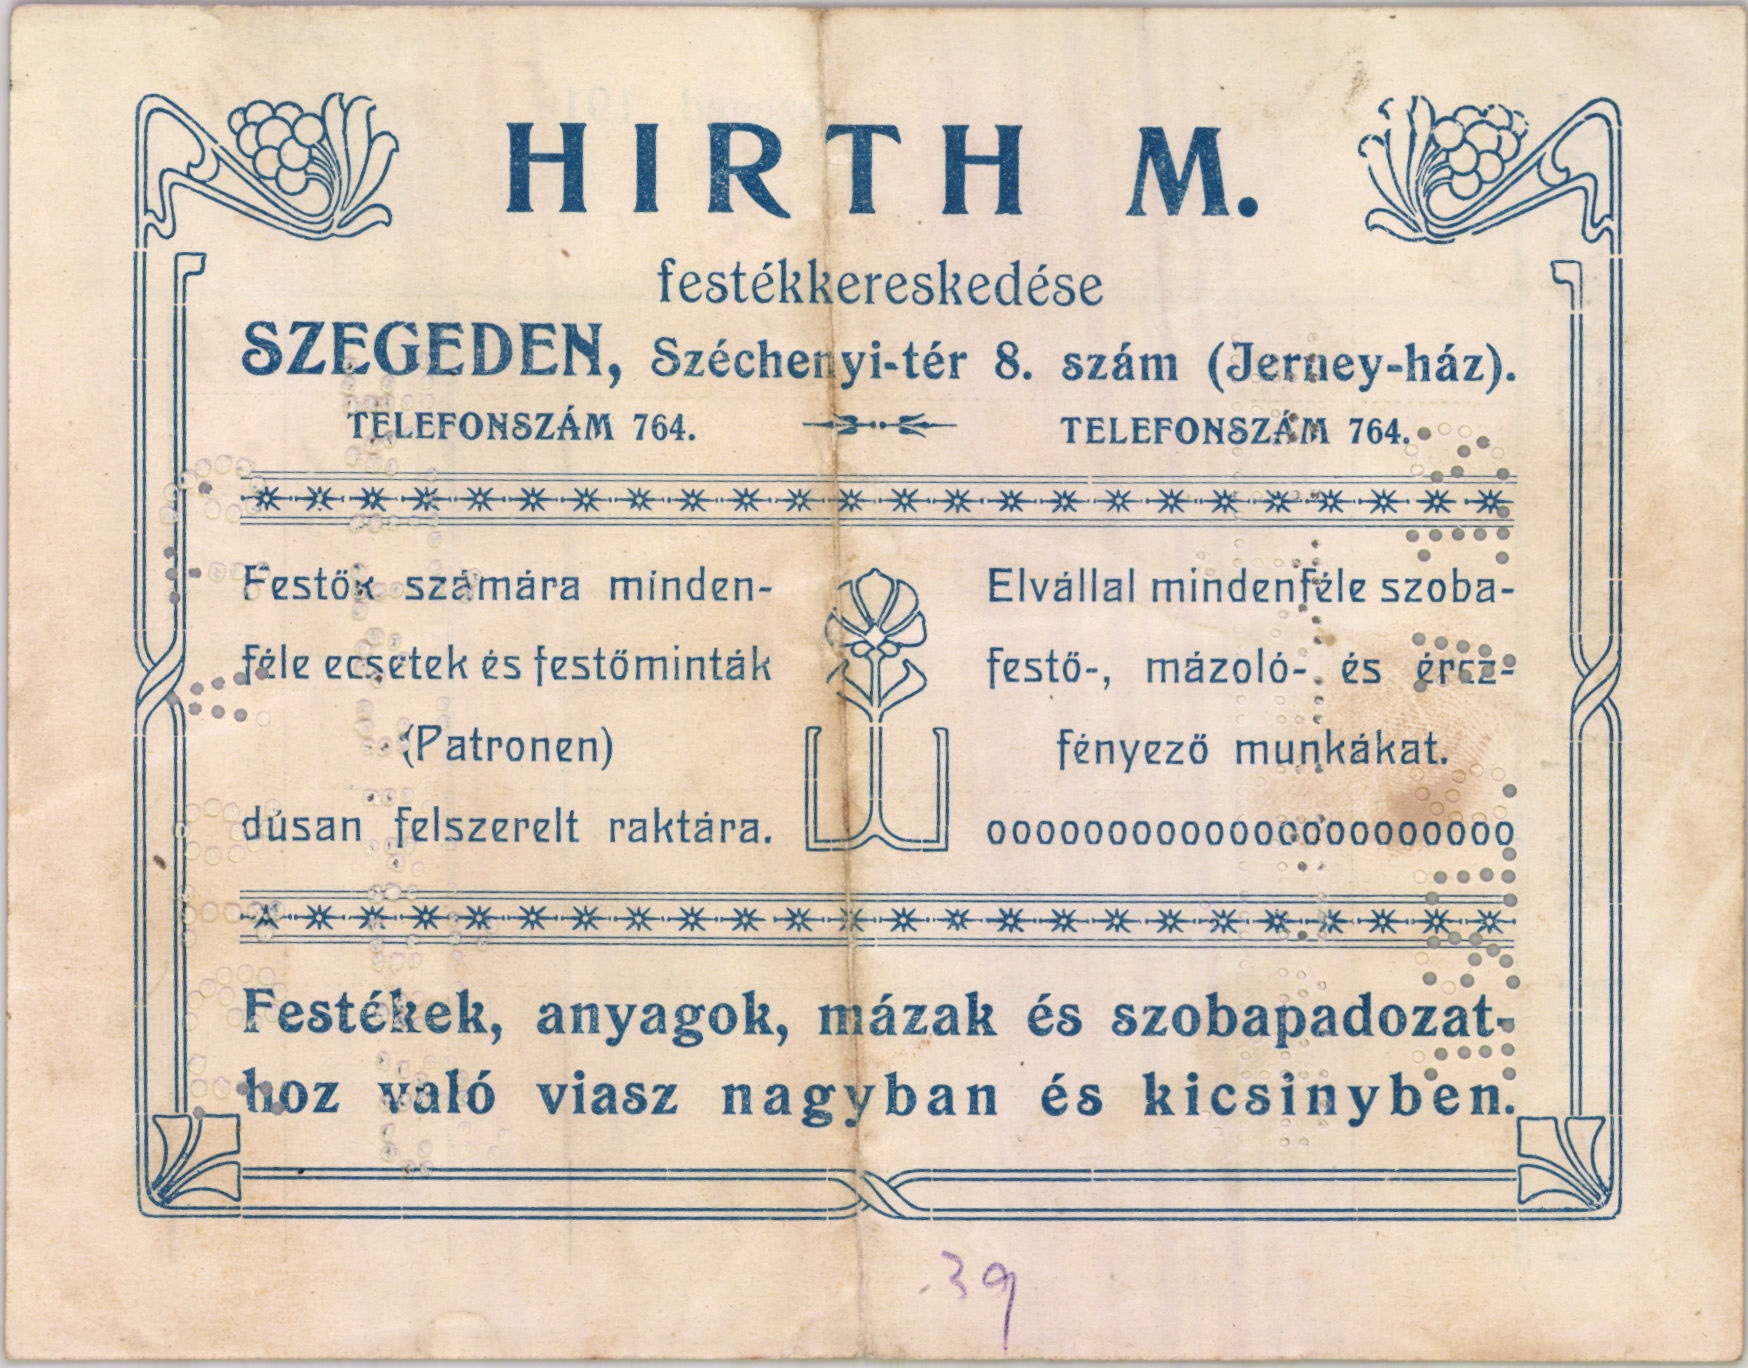 Hirth M. festékereskedése (Magyar Kereskedelmi és Vendéglátóipari Múzeum CC BY-NC-SA)